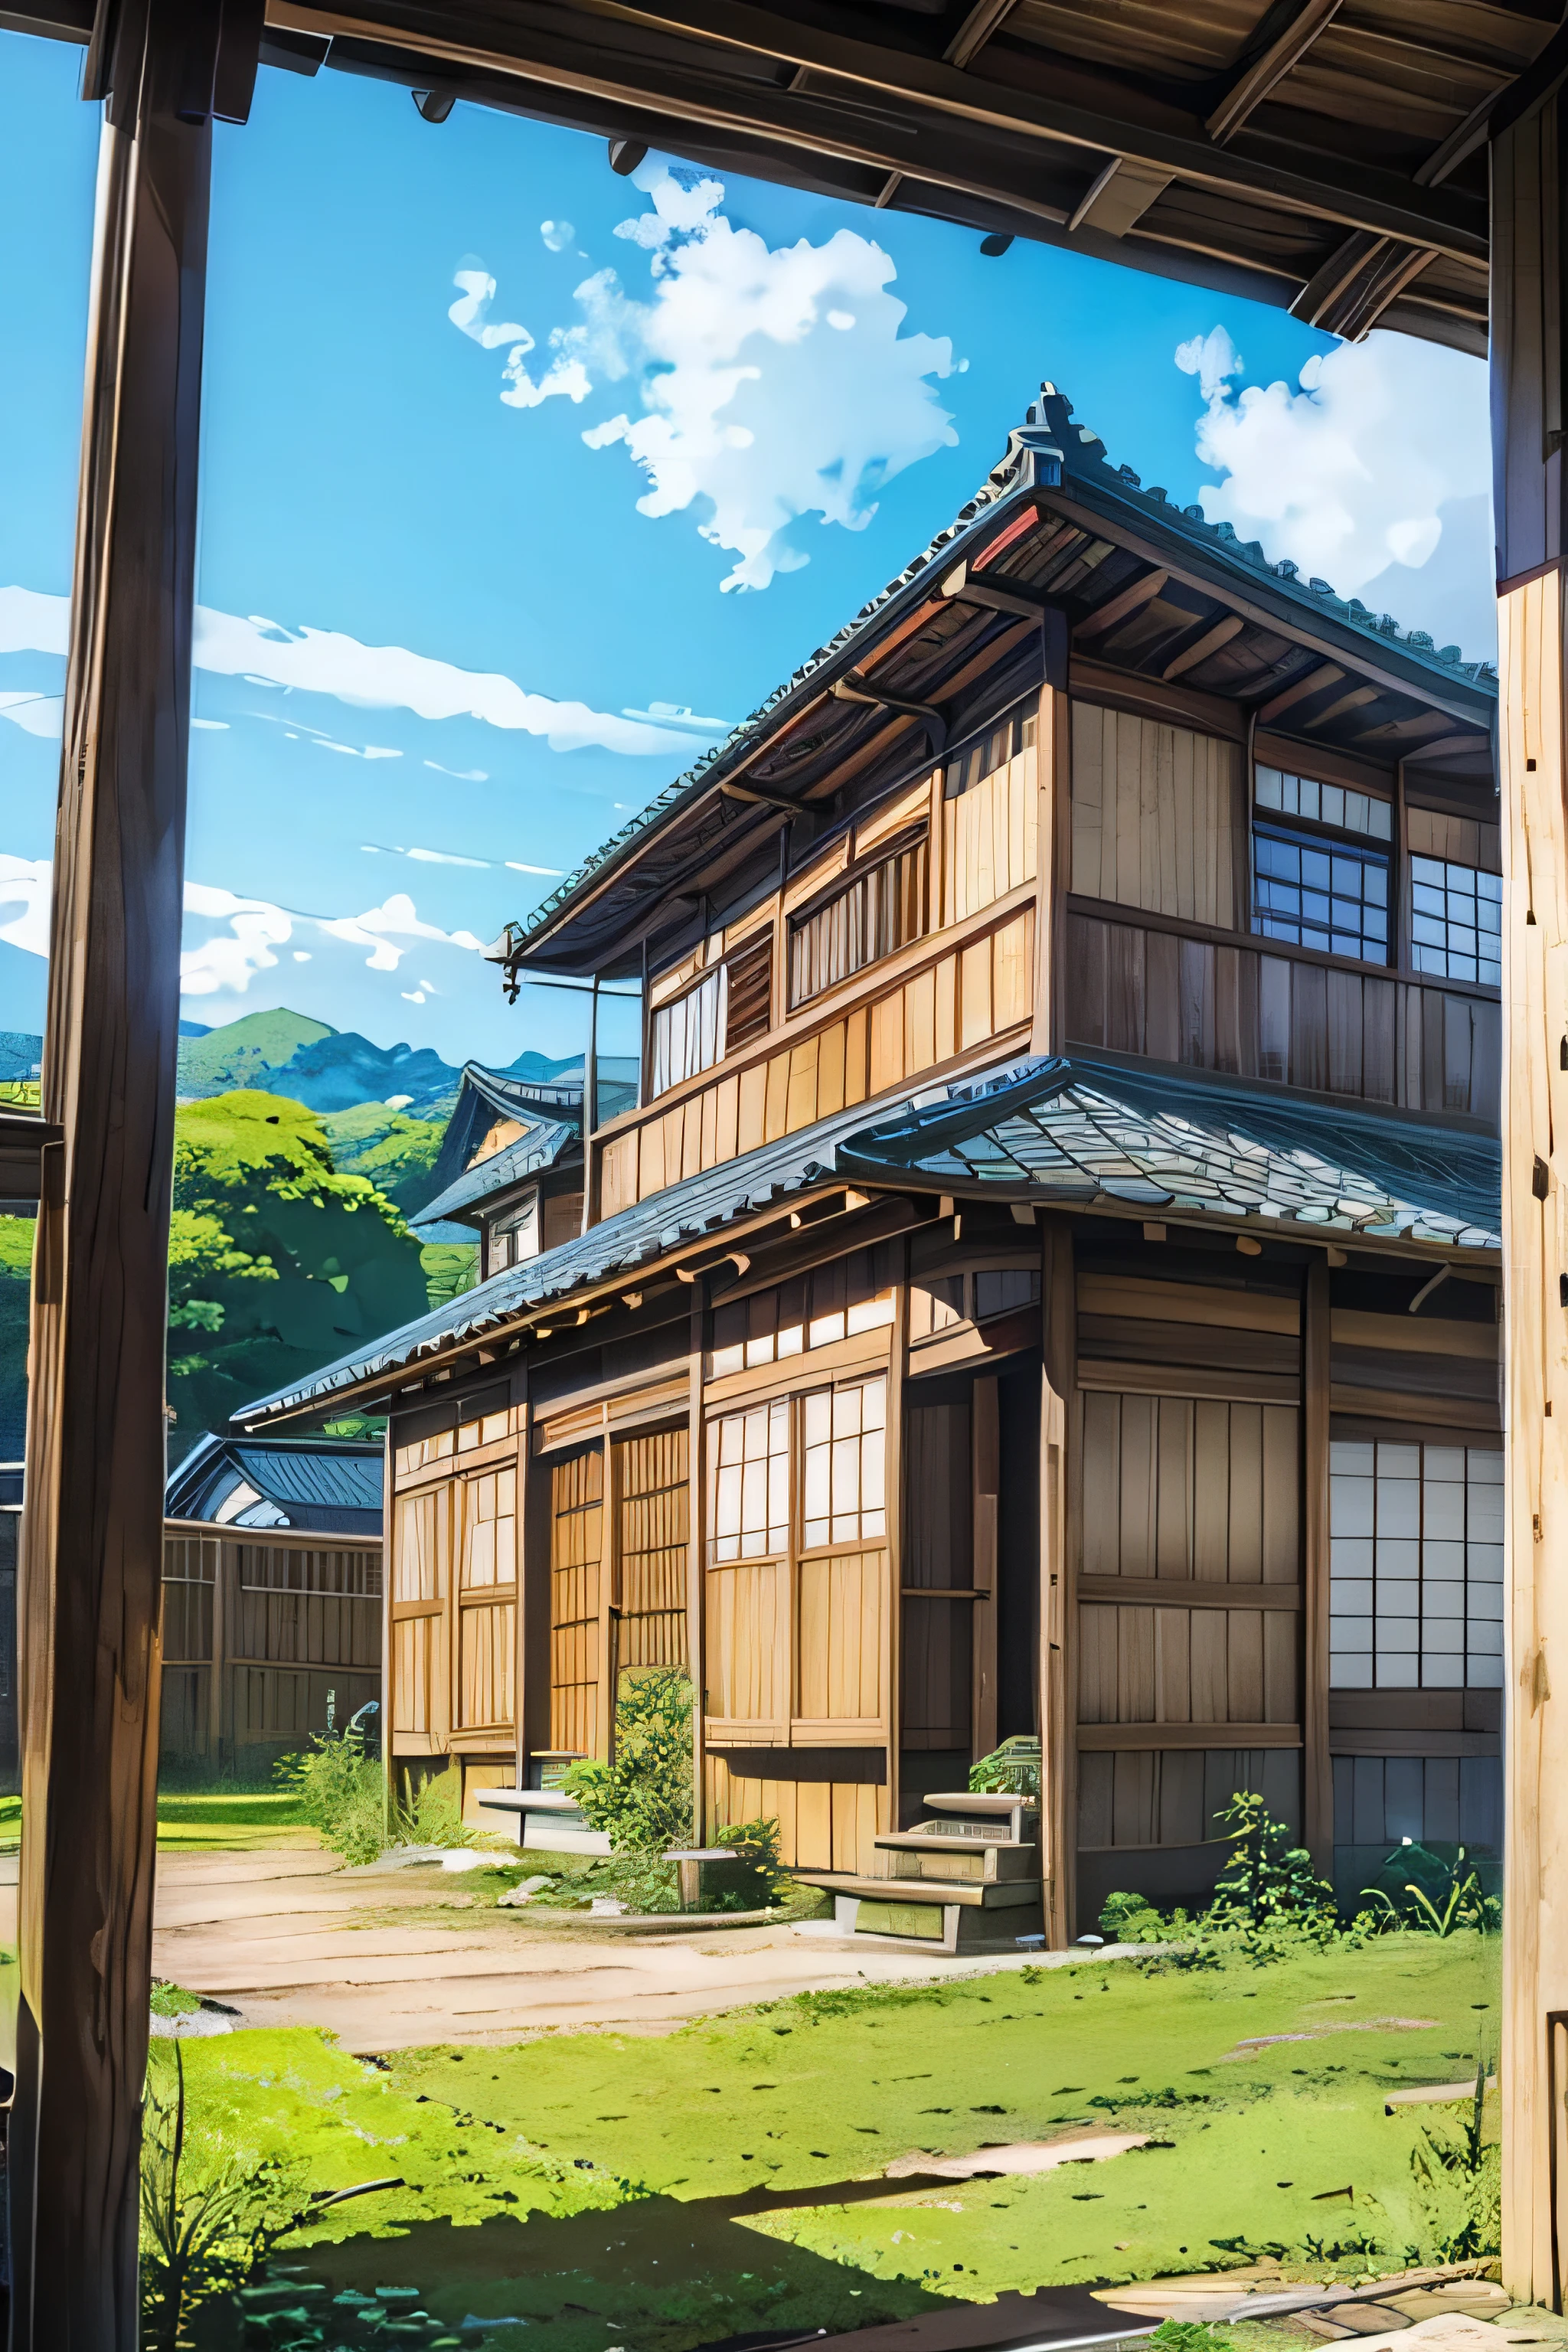 niedrige Winkel、Weitwinkelobjektiv、Altes japanisches Haus、traditional wooden house in the Landside、Land、Weiter blauer Himmel、Anime-Hintergrund